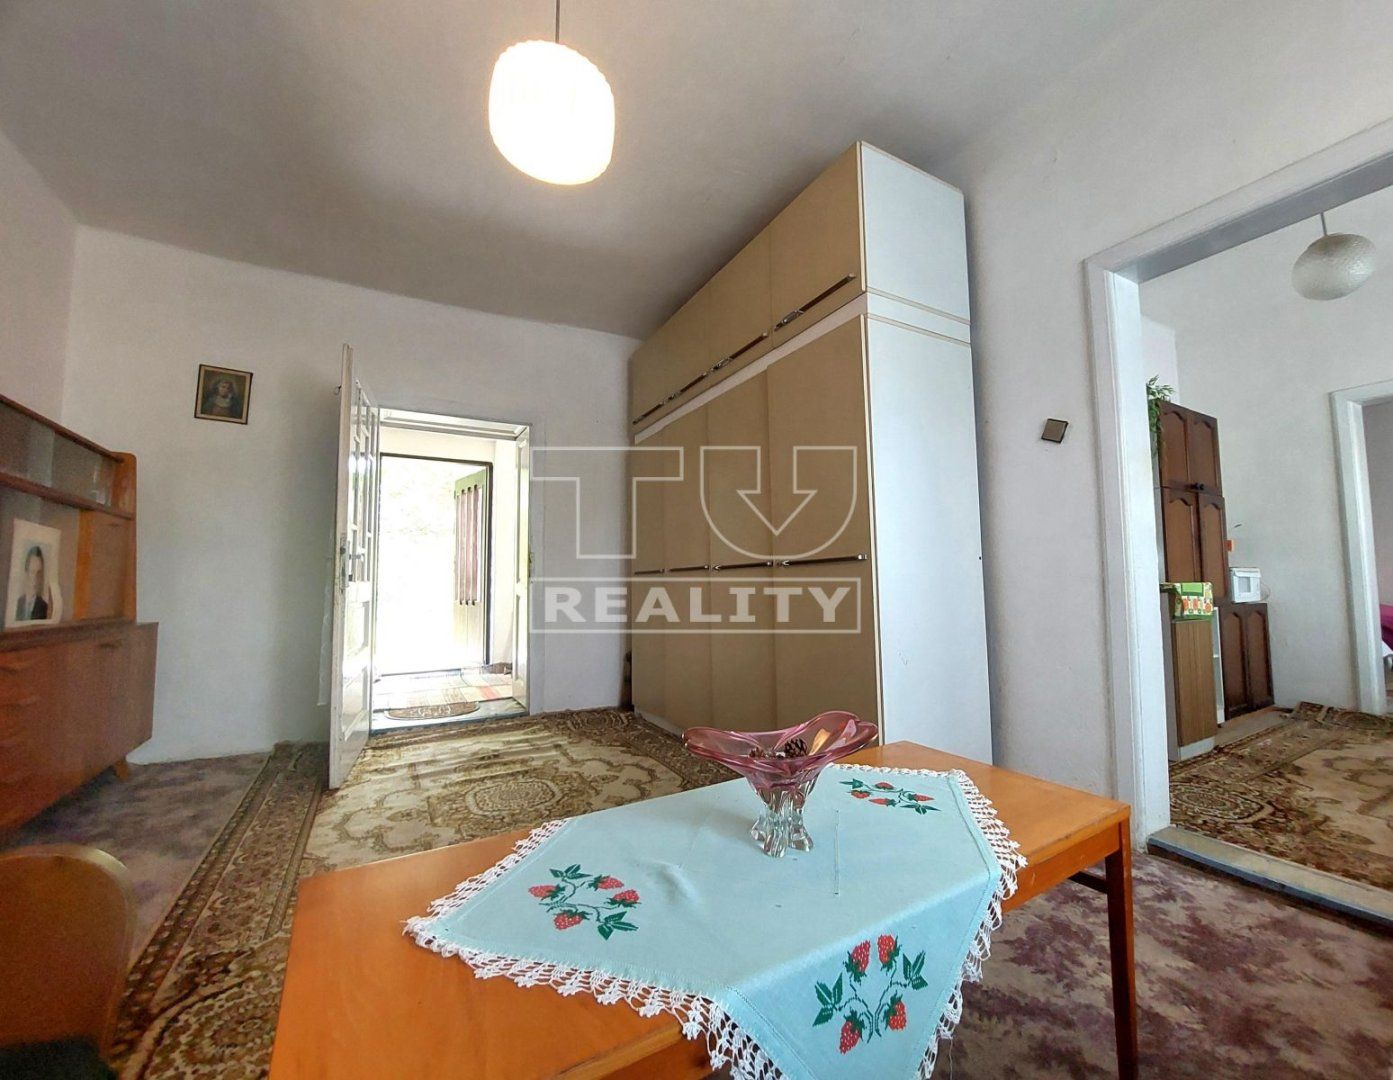 Znížená cena!!!
Na predaj starší rodinný dom v Nitrianskej Blatnici, postavený na krásnom slnečnom pozemku 2000 m2